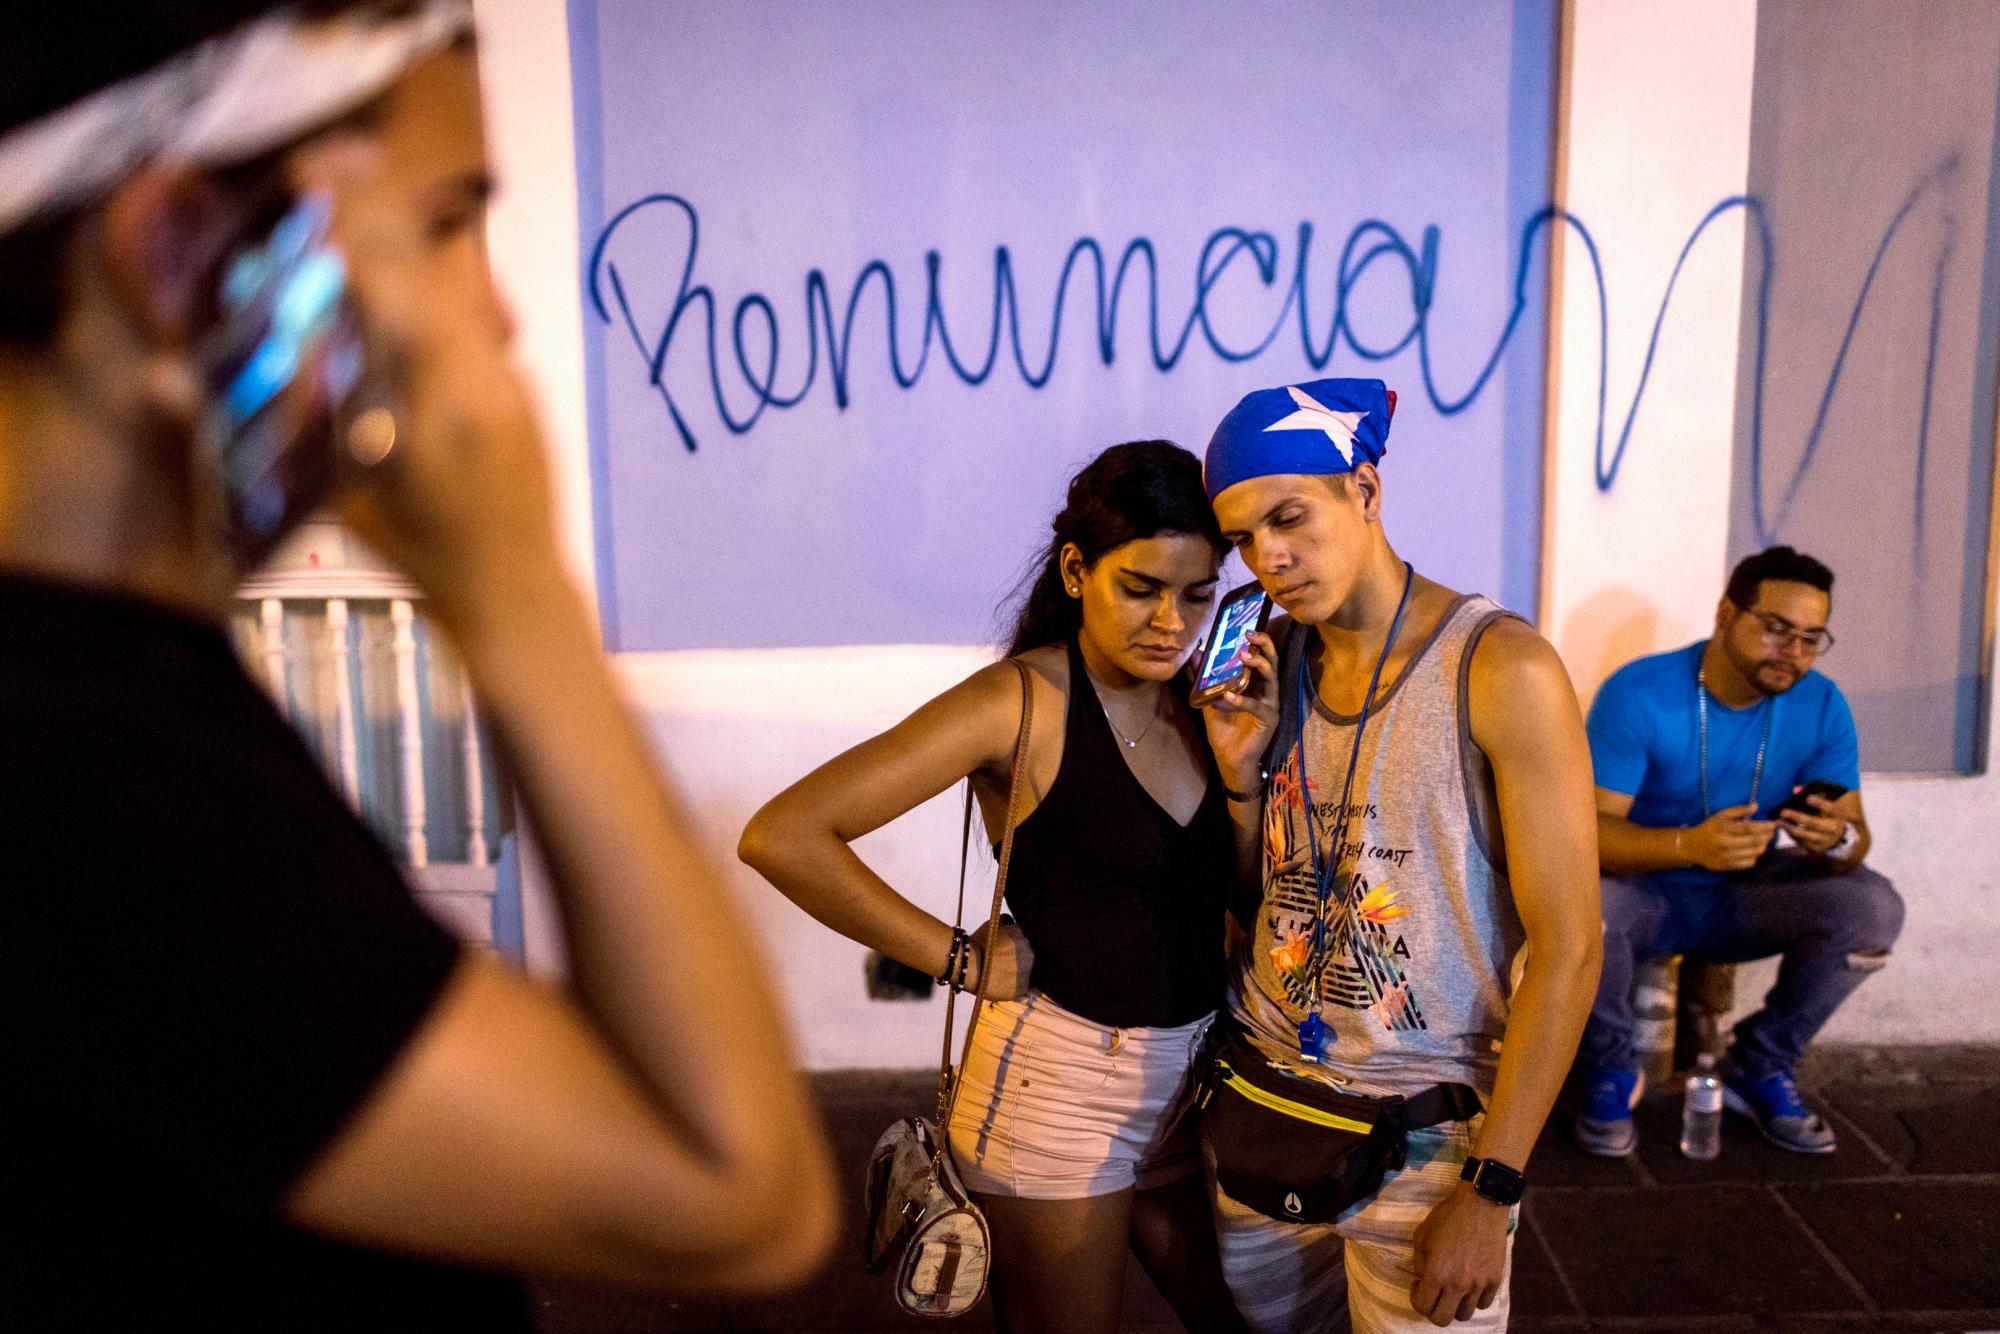 En esta imagen, tomada el 24 de julio de 2019, puertorriqueños escuchan en celulares un mensaje pregrabado del gobernador de Puerto Rico, Ricardo Rosselló, anunciando su renuncia el próximo 2  de agosto tras semanas de protestas luego de la filtracion de conversaciones de chat de contenido obsceno y misógino, en San Juan, Puerto Rico. 